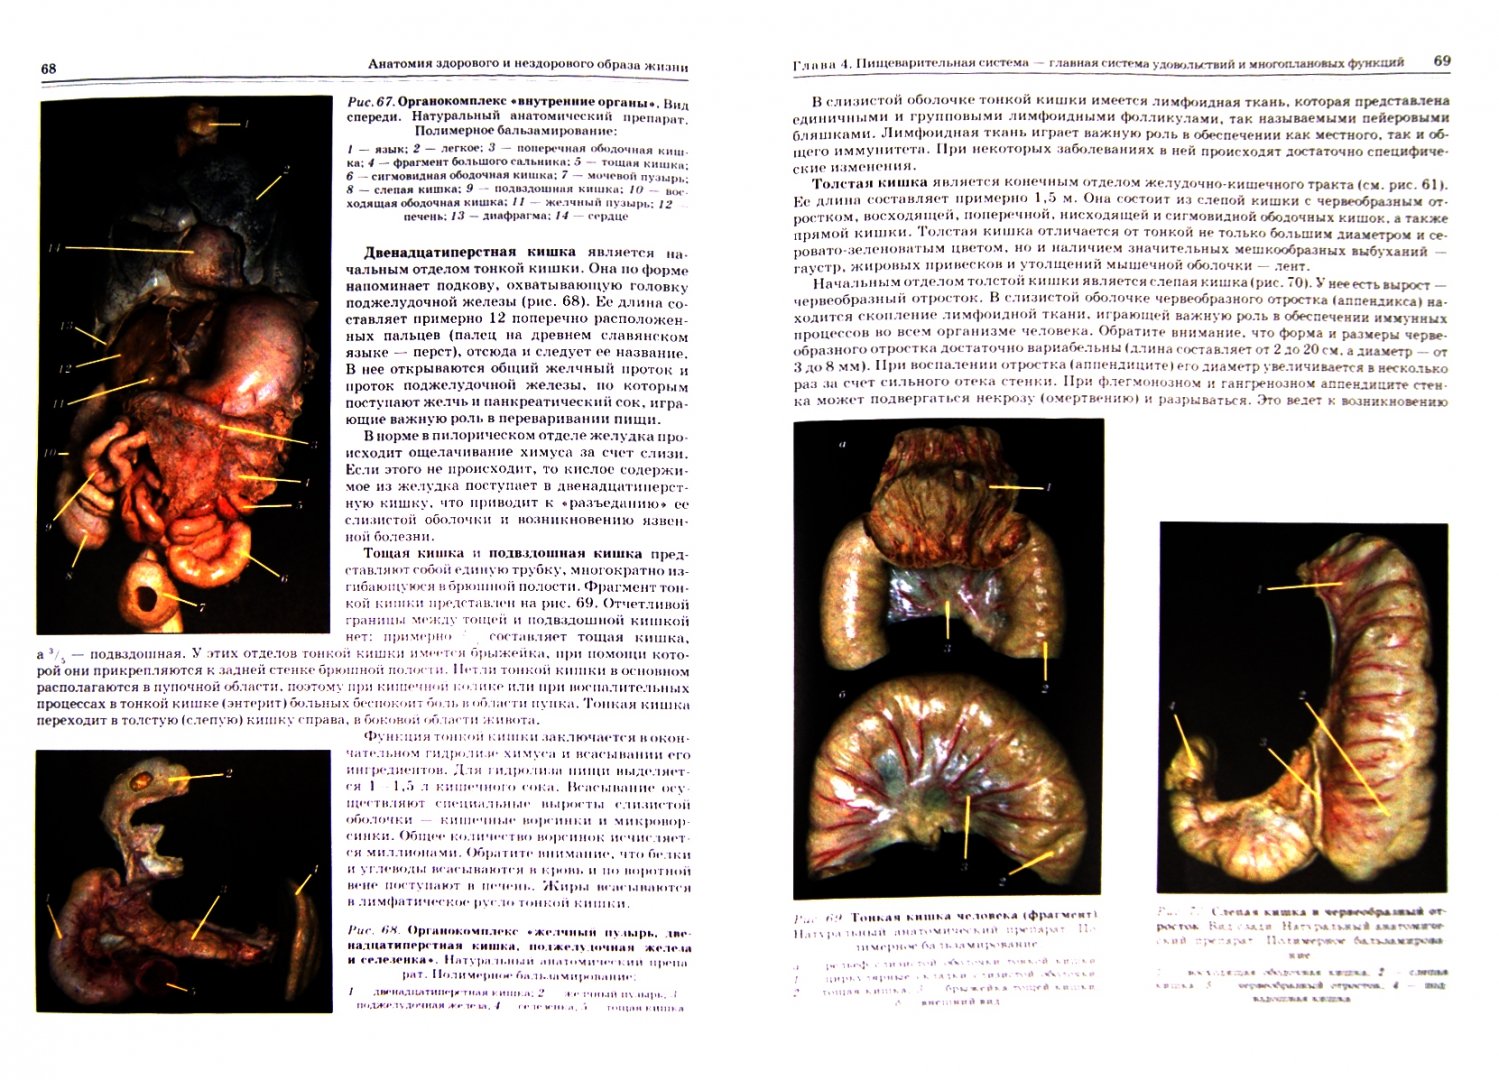 Иллюстрация 1 из 17 для Анатомия здорового и нездорового образа жизни - Гайворонский, Ничипорук, Яблонский | Лабиринт - книги. Источник: Лабиринт